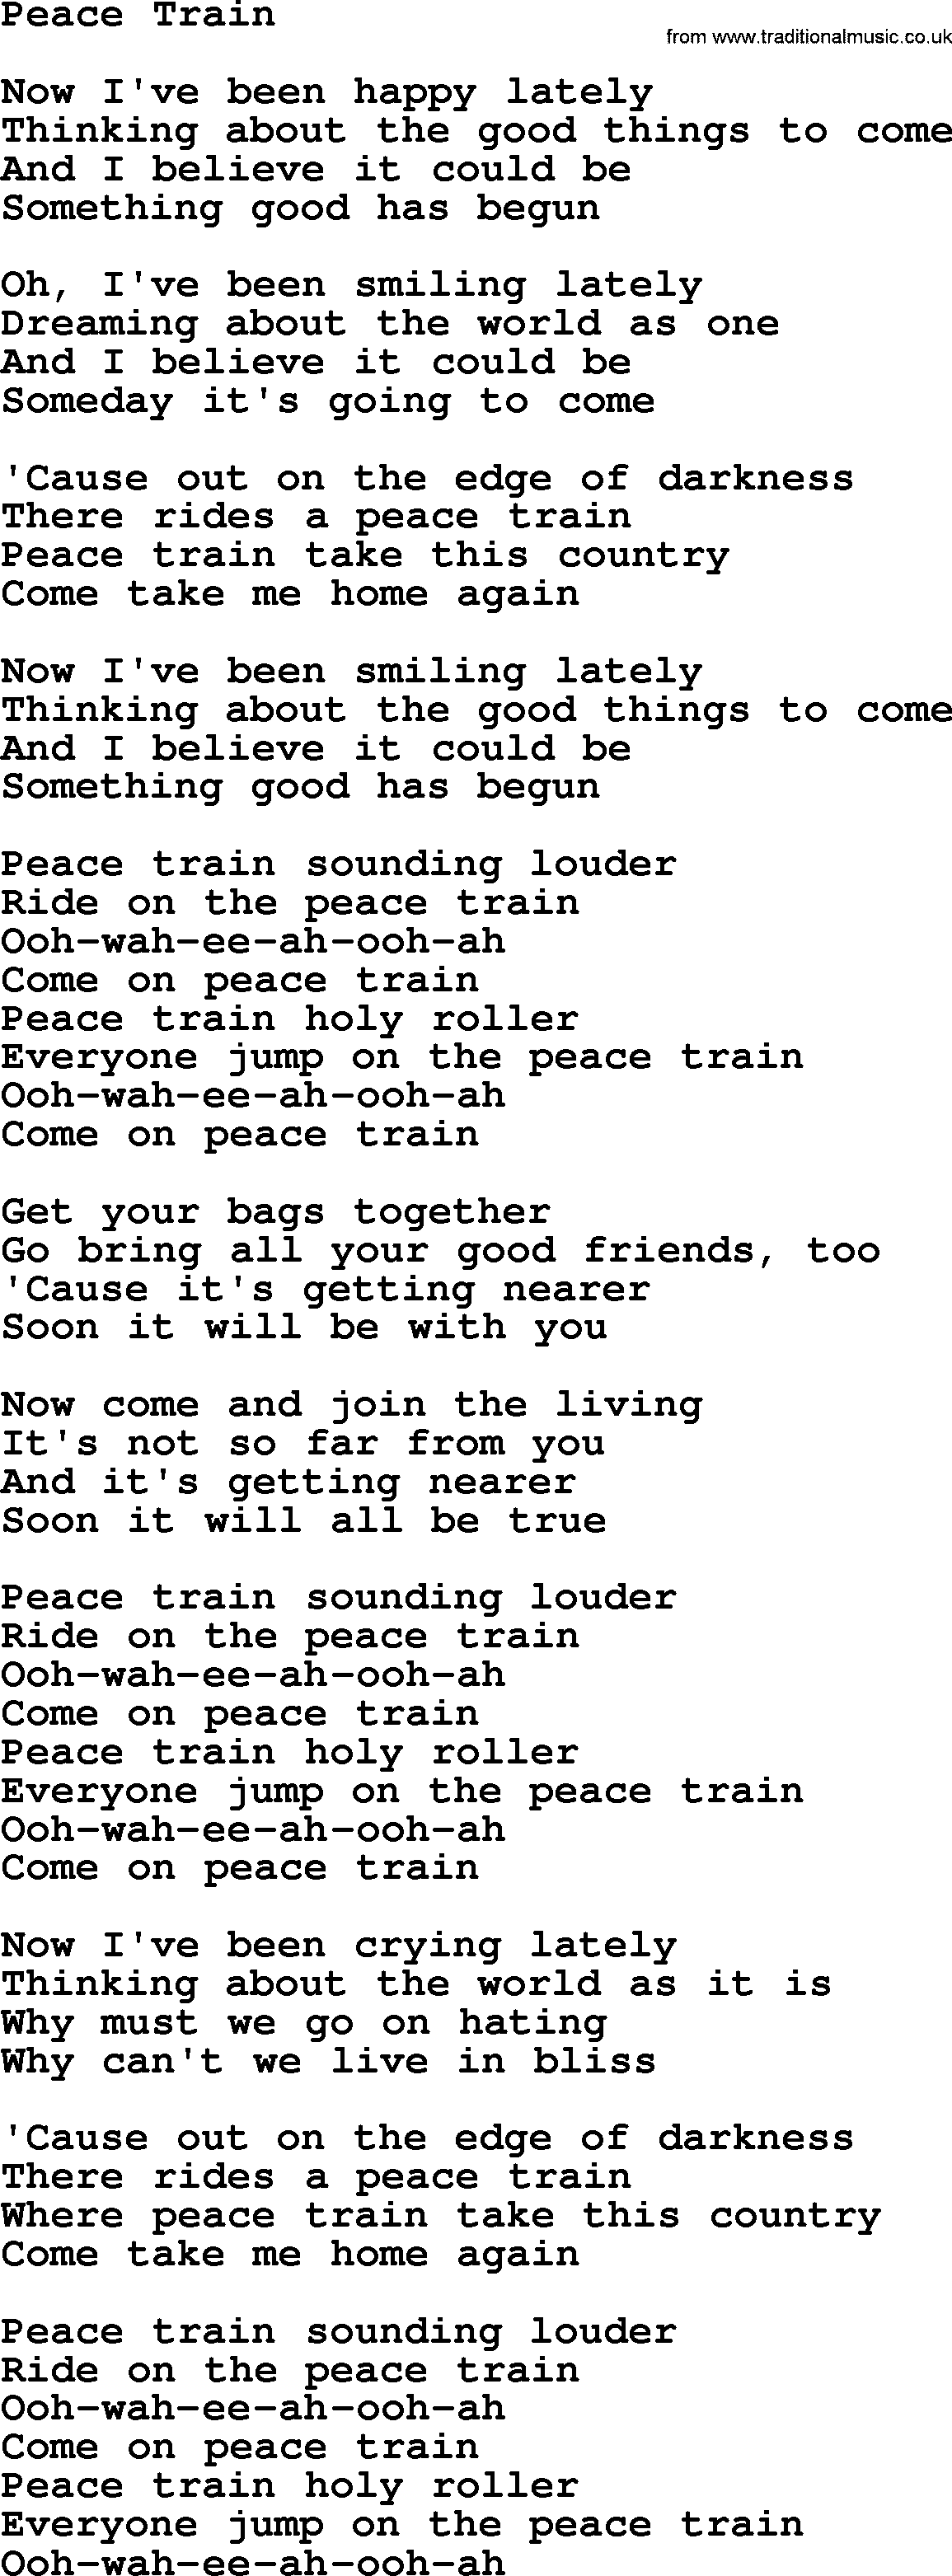 Dolly Parton song Peace Train.txt lyrics